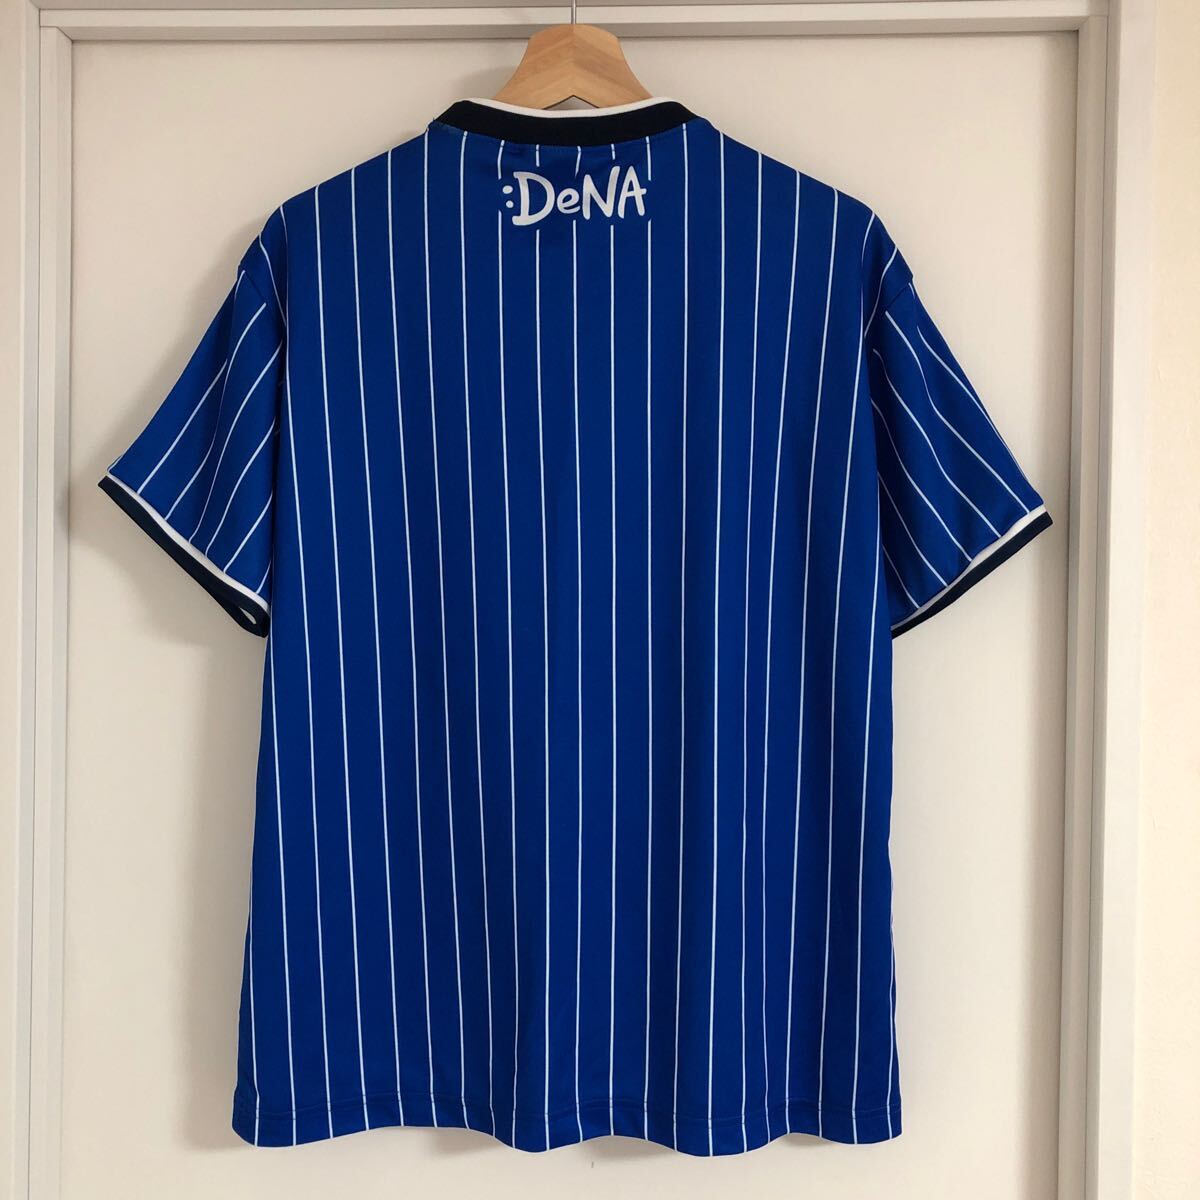 横浜DeNAベイスターズ 選手着用レプリカ Tシャツ Lサイズ デサントの画像2